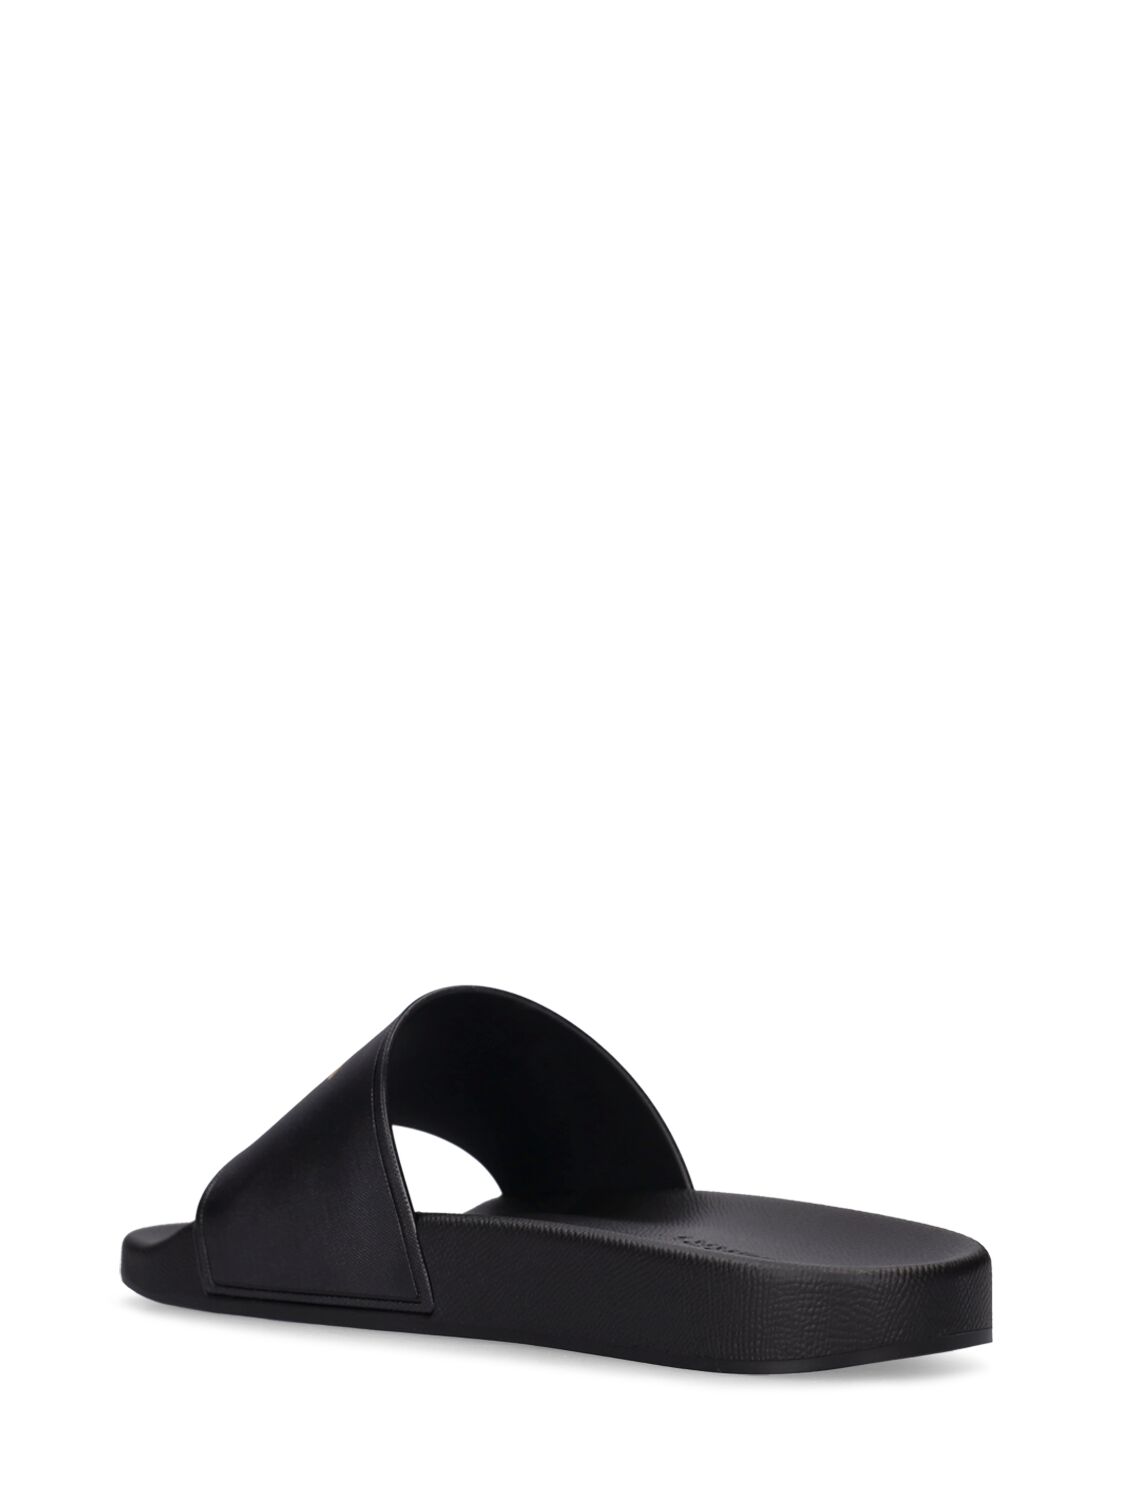 Shop Burberry Furley Slide Sandals In Black